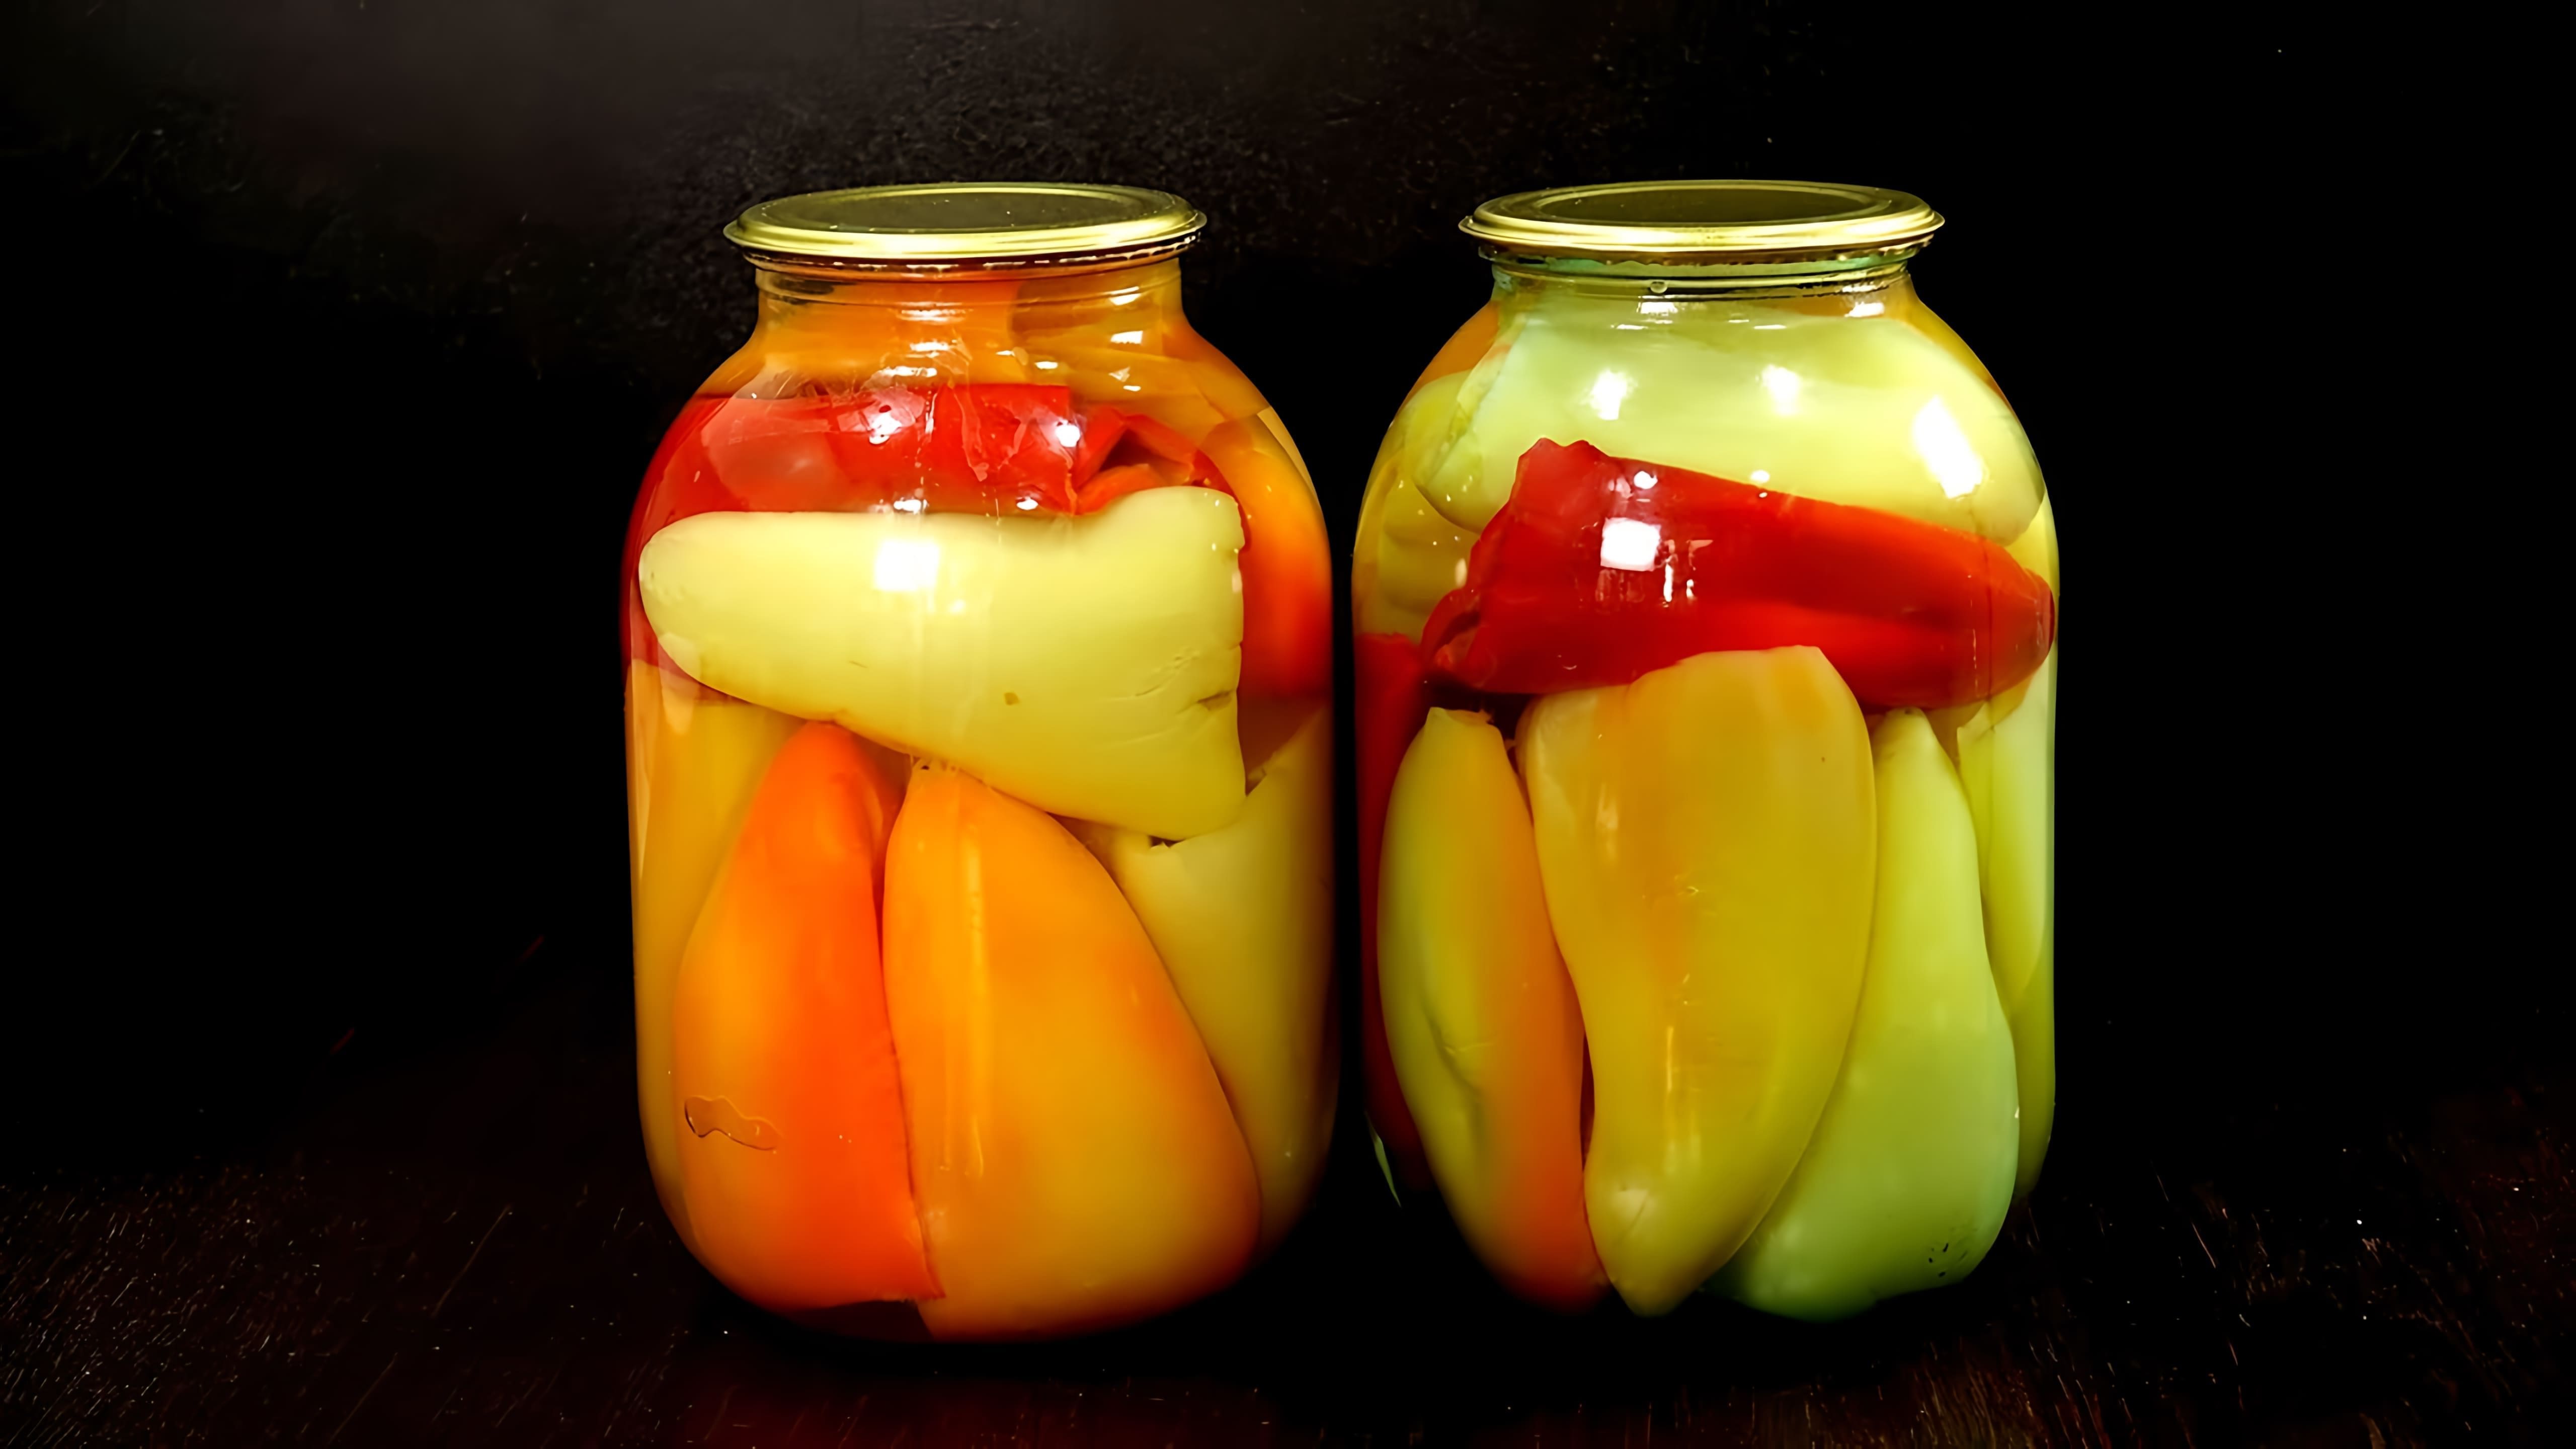 Видео рассматривает 5 методов консервирования перца на зиму - жареный перец, перец, маринованный в уксусе, перец, приготовленный в томатном соусе, перечная паста и обдавленный перец для начинки